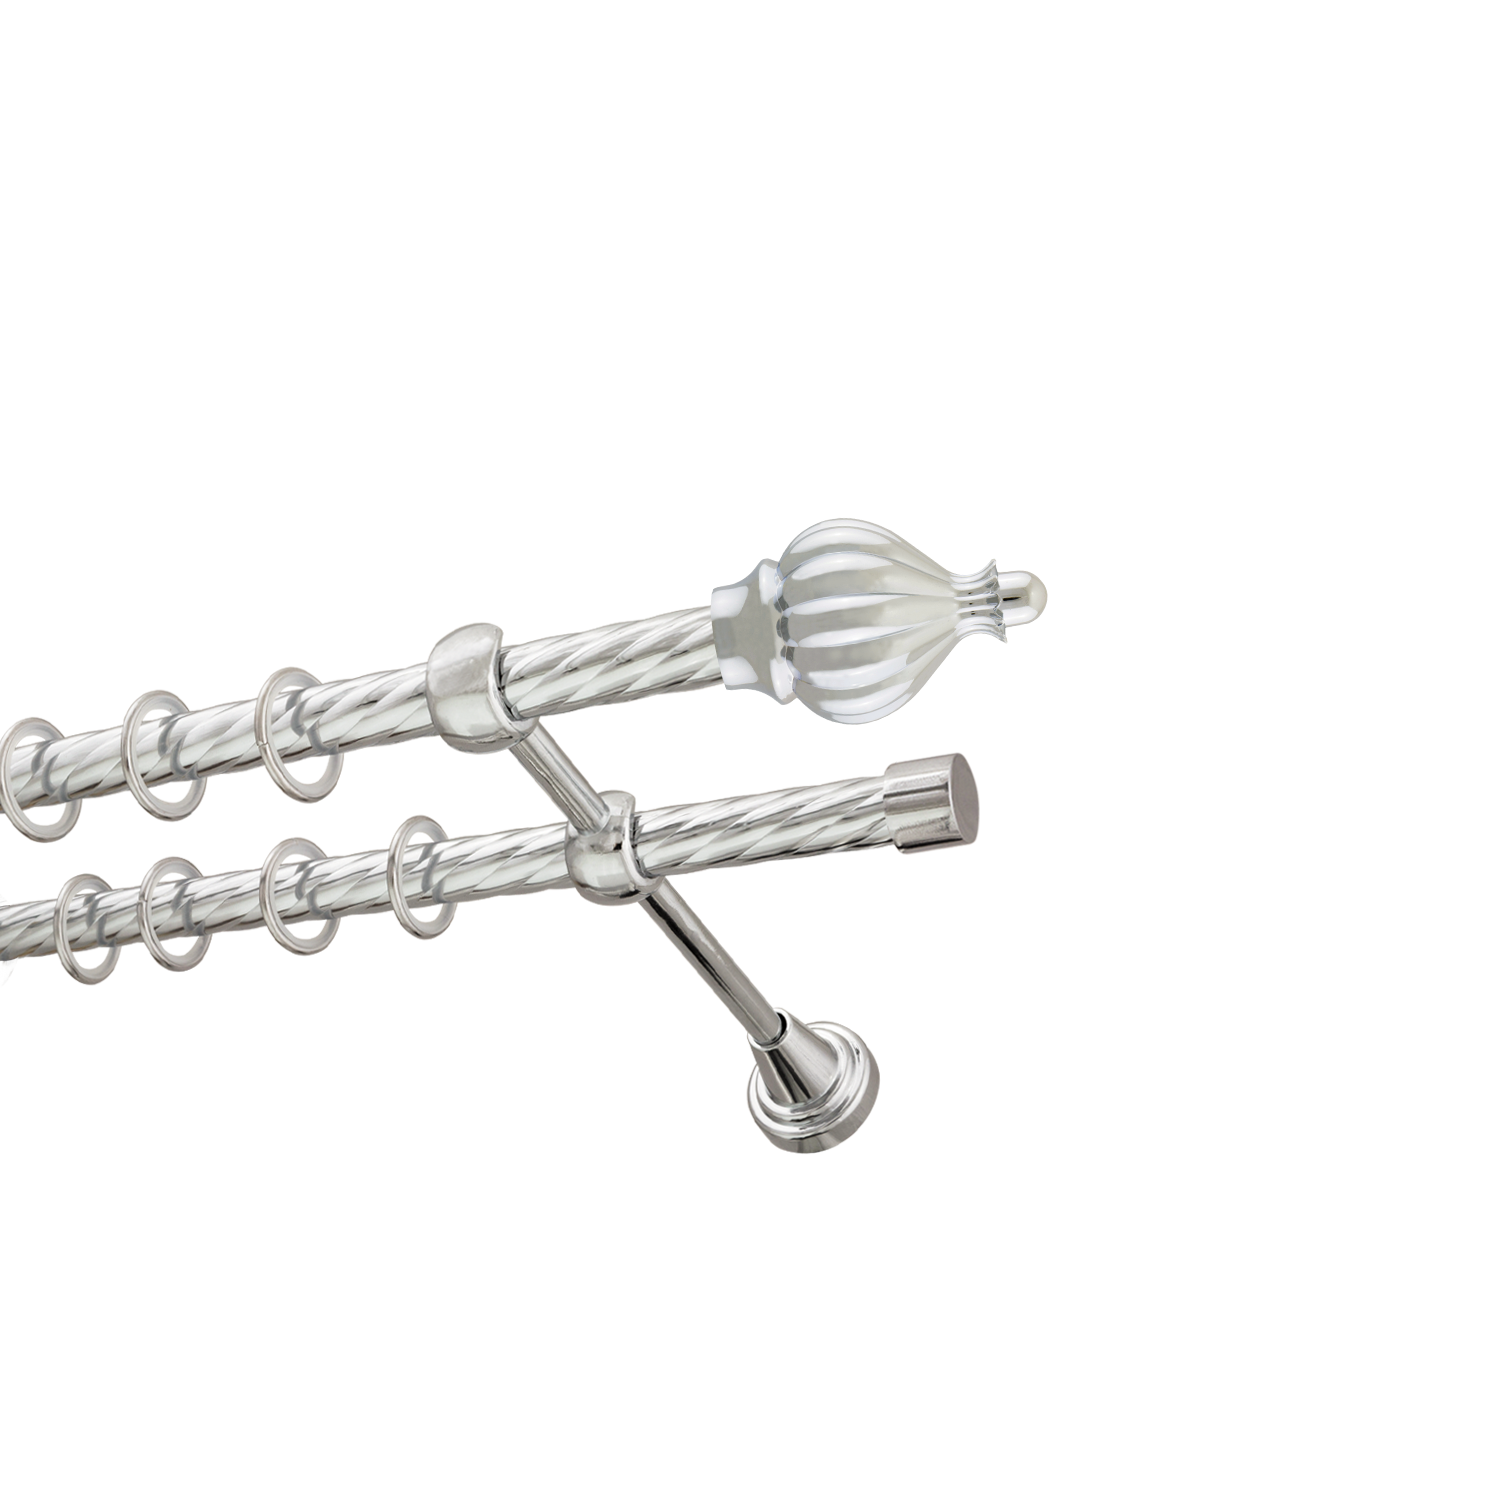 Металлический карниз для штор Афродита, двухрядный 16/16 мм, серебро, витая штанга, длина 180 см